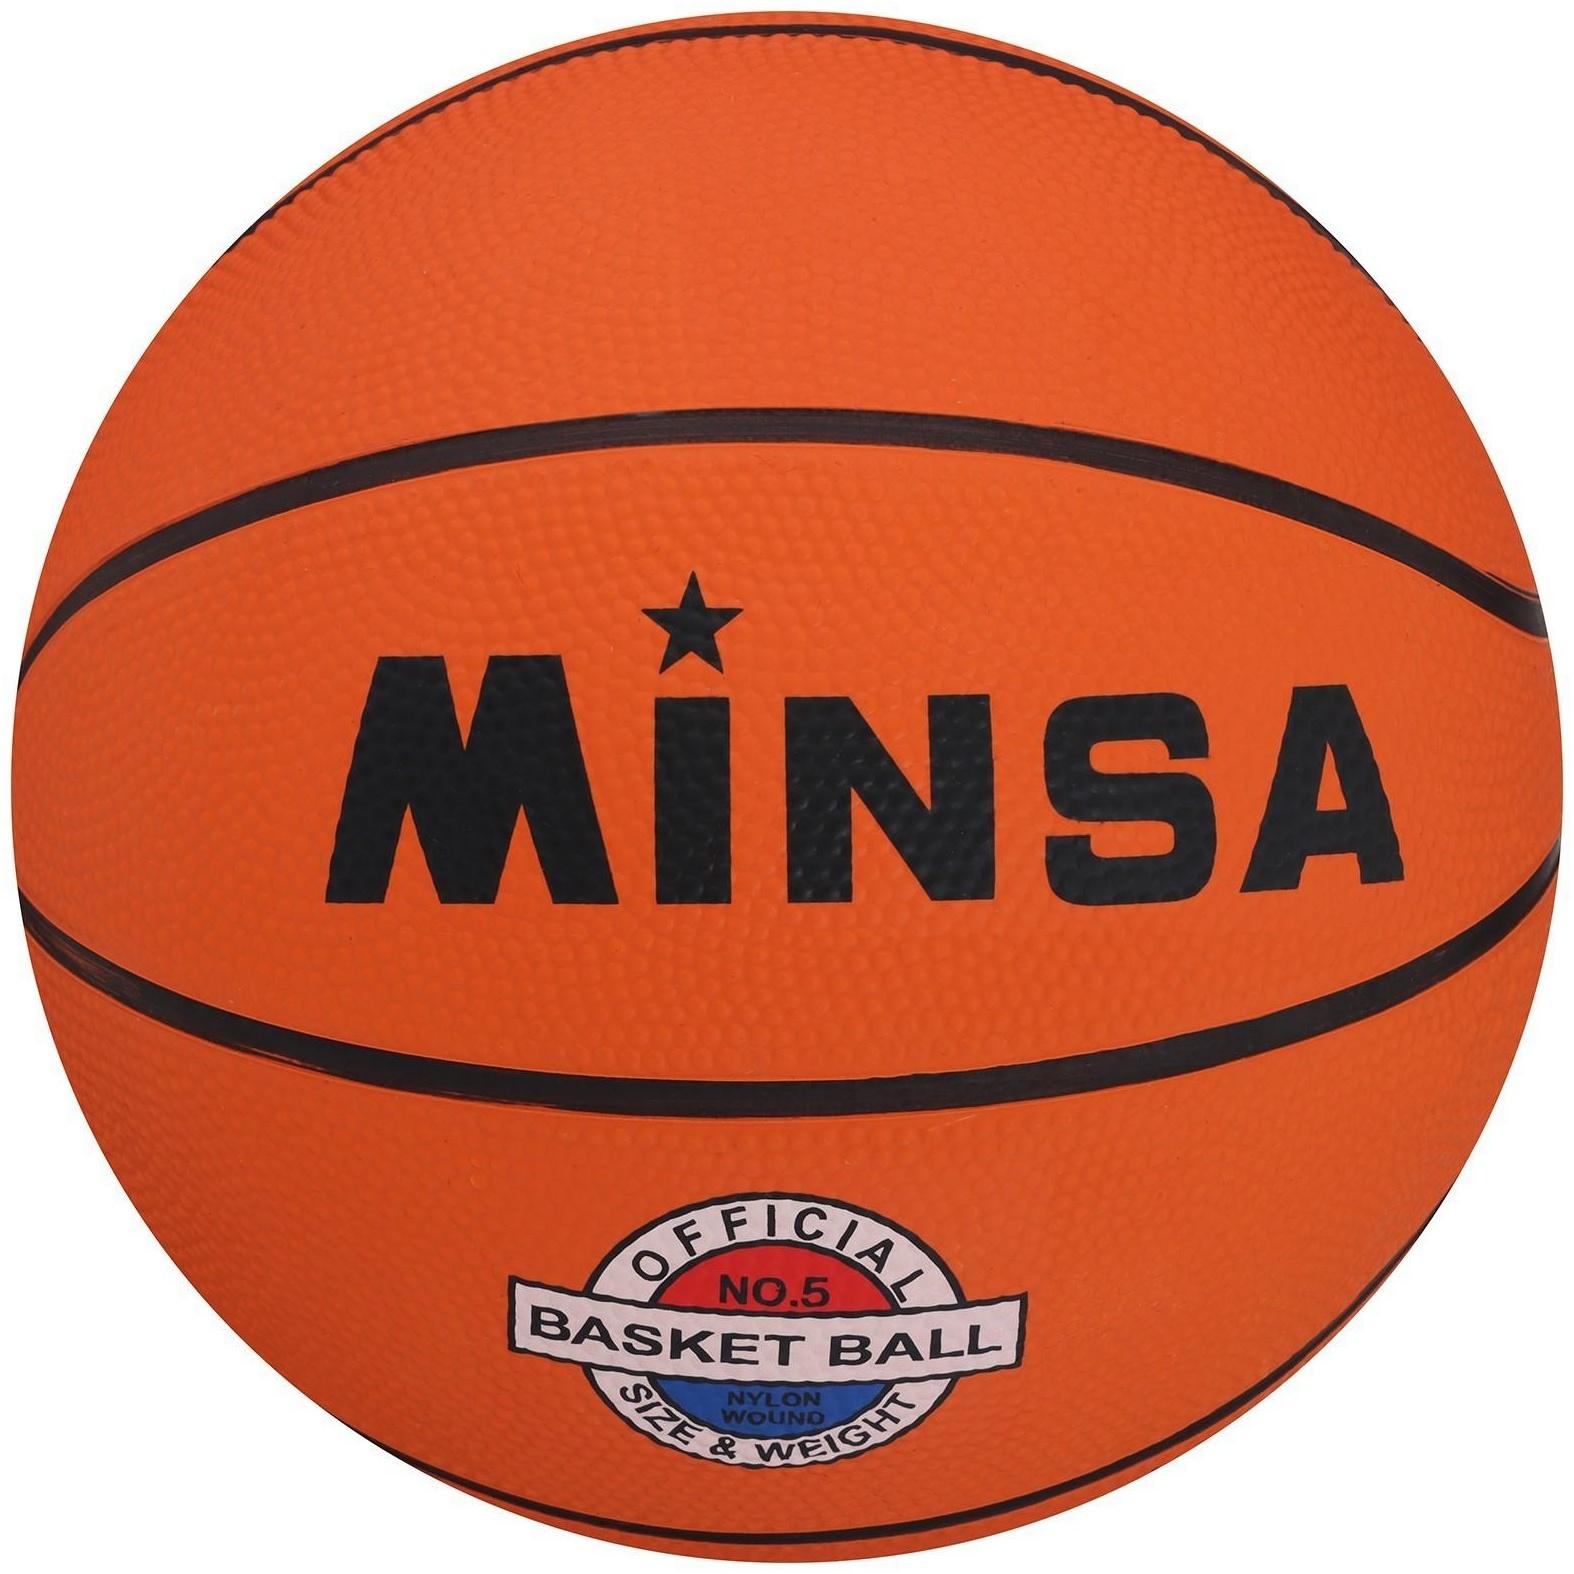 Мяч баскетбольный Sport, ПВХ, клееный, размер 5